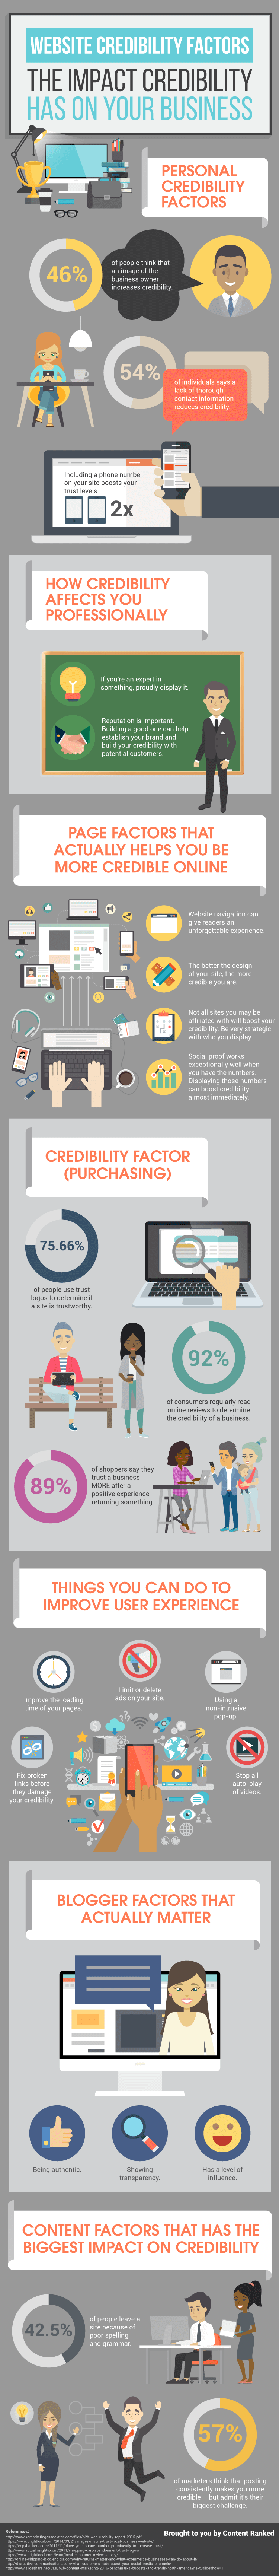 website-credibility-factors.png